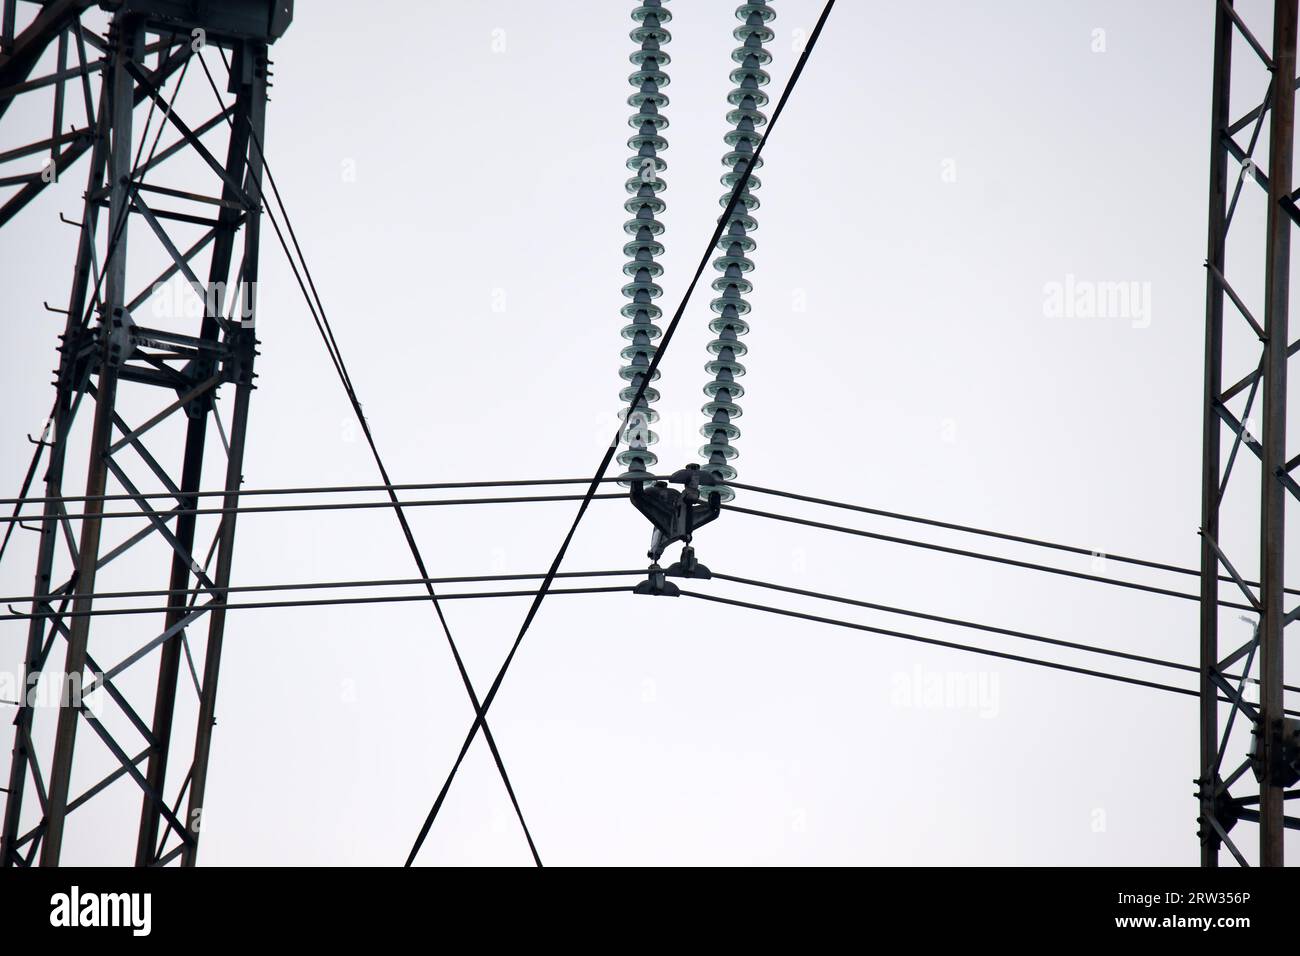 Hochspannungsturm mit elektrischen Stromleitungen, die durch eine sichere Schutzbuchse geteilt werden, wodurch die elektrische Energie sicher durch Kabeldrähte übertragen wird. Strom Stockfoto